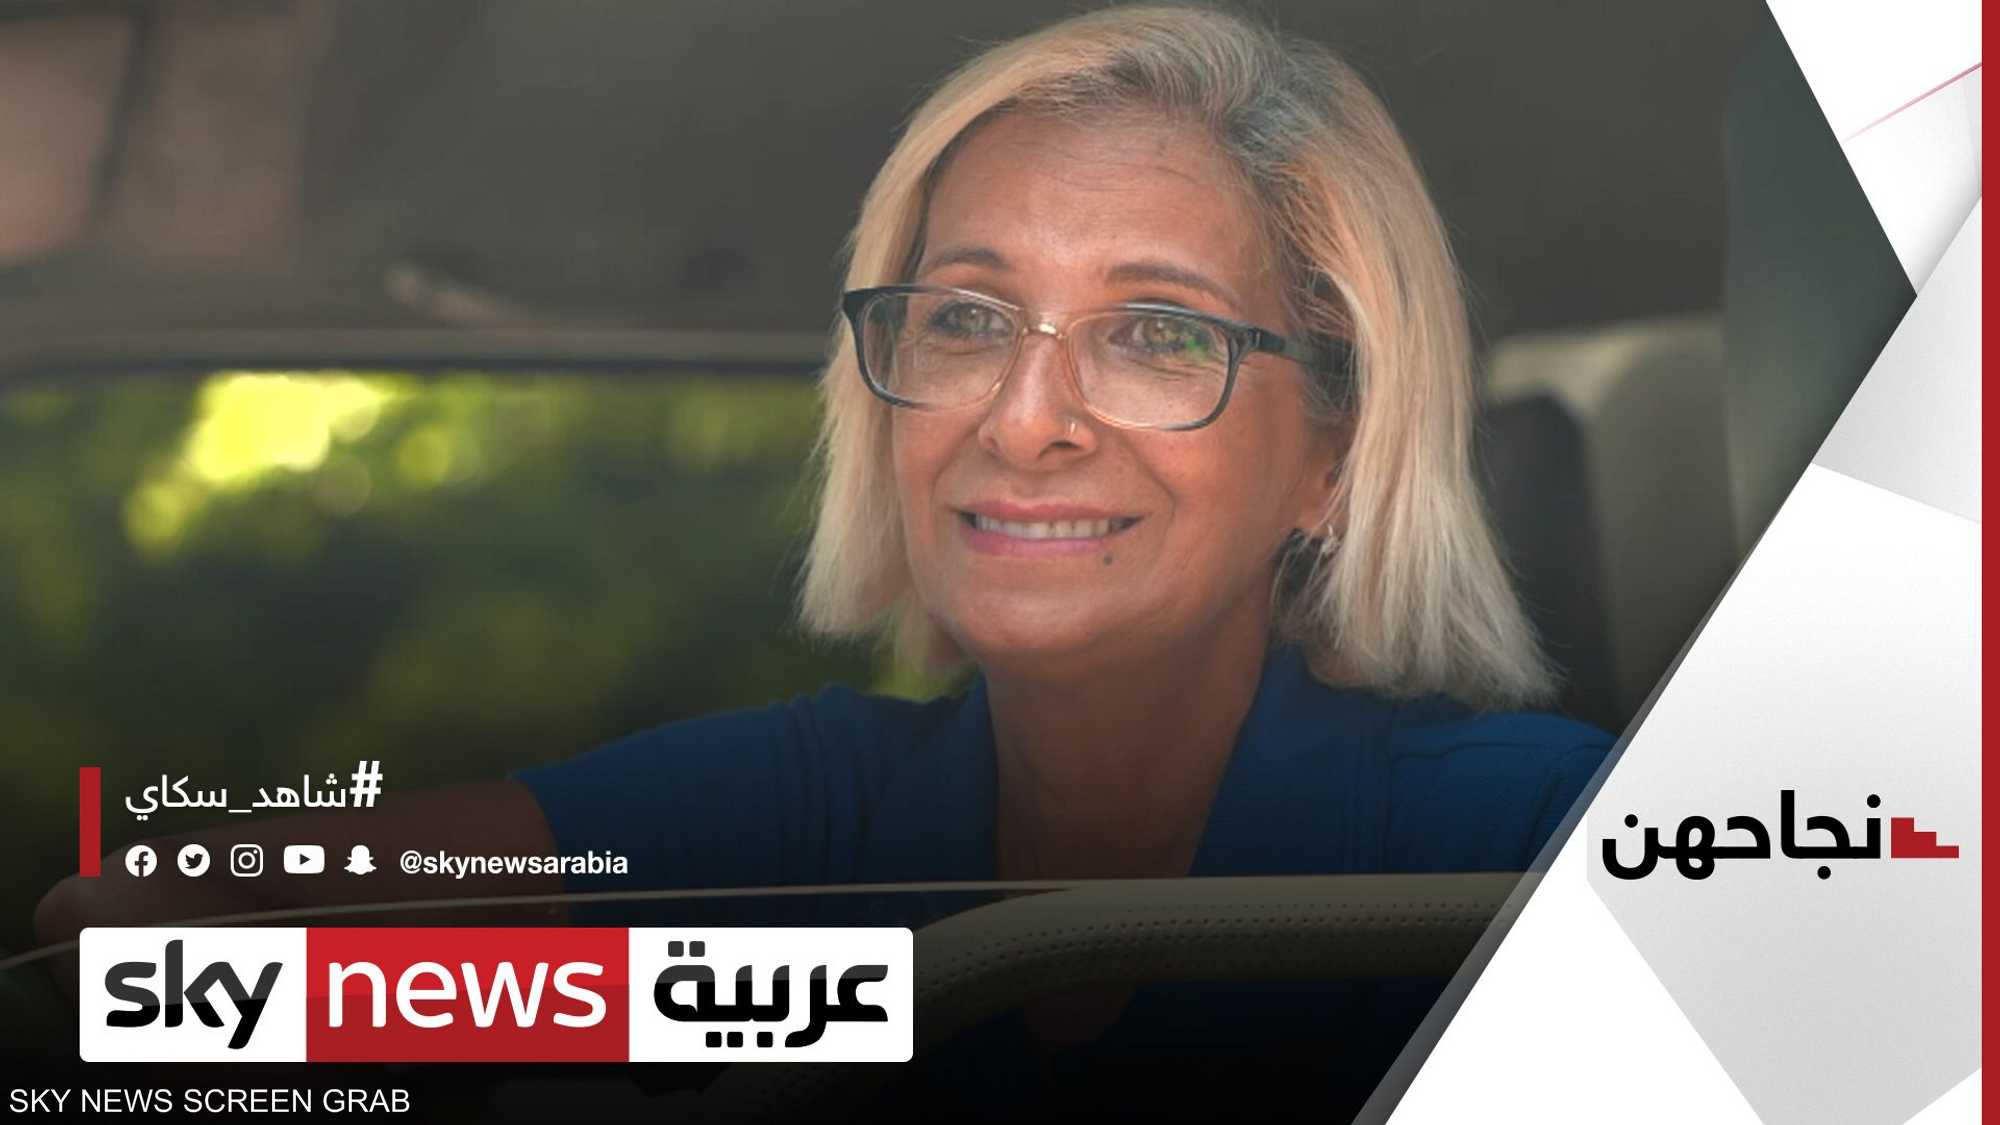 ليندا عقل.. لبنانية تعمل سائقة شاحنة مازوت لمساعدة أسرتها